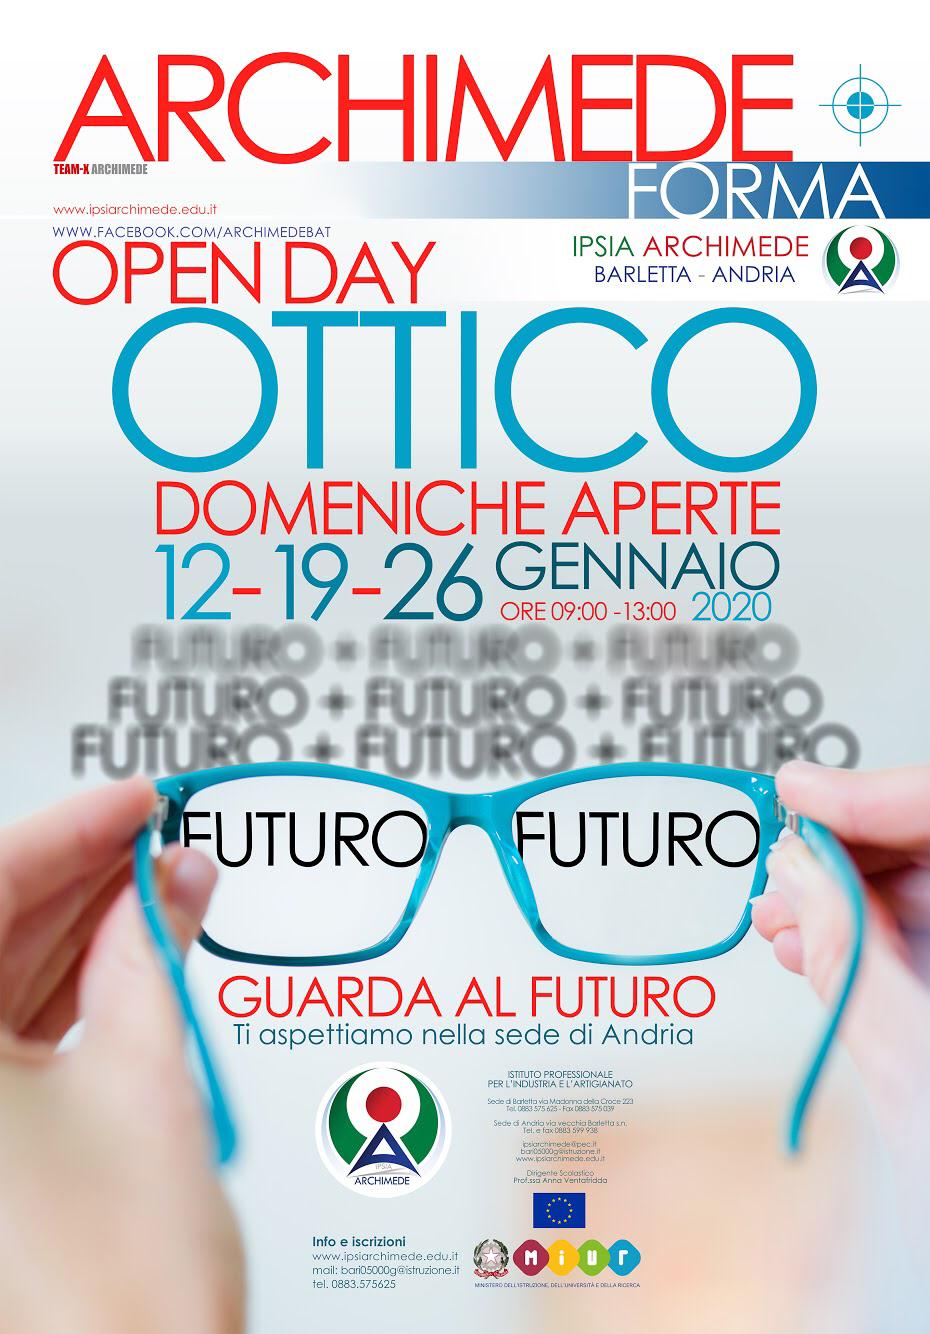 IPSIA ARCHIMEDE, poster di un paio di occhiali che focalizzano il testo FUTURO.